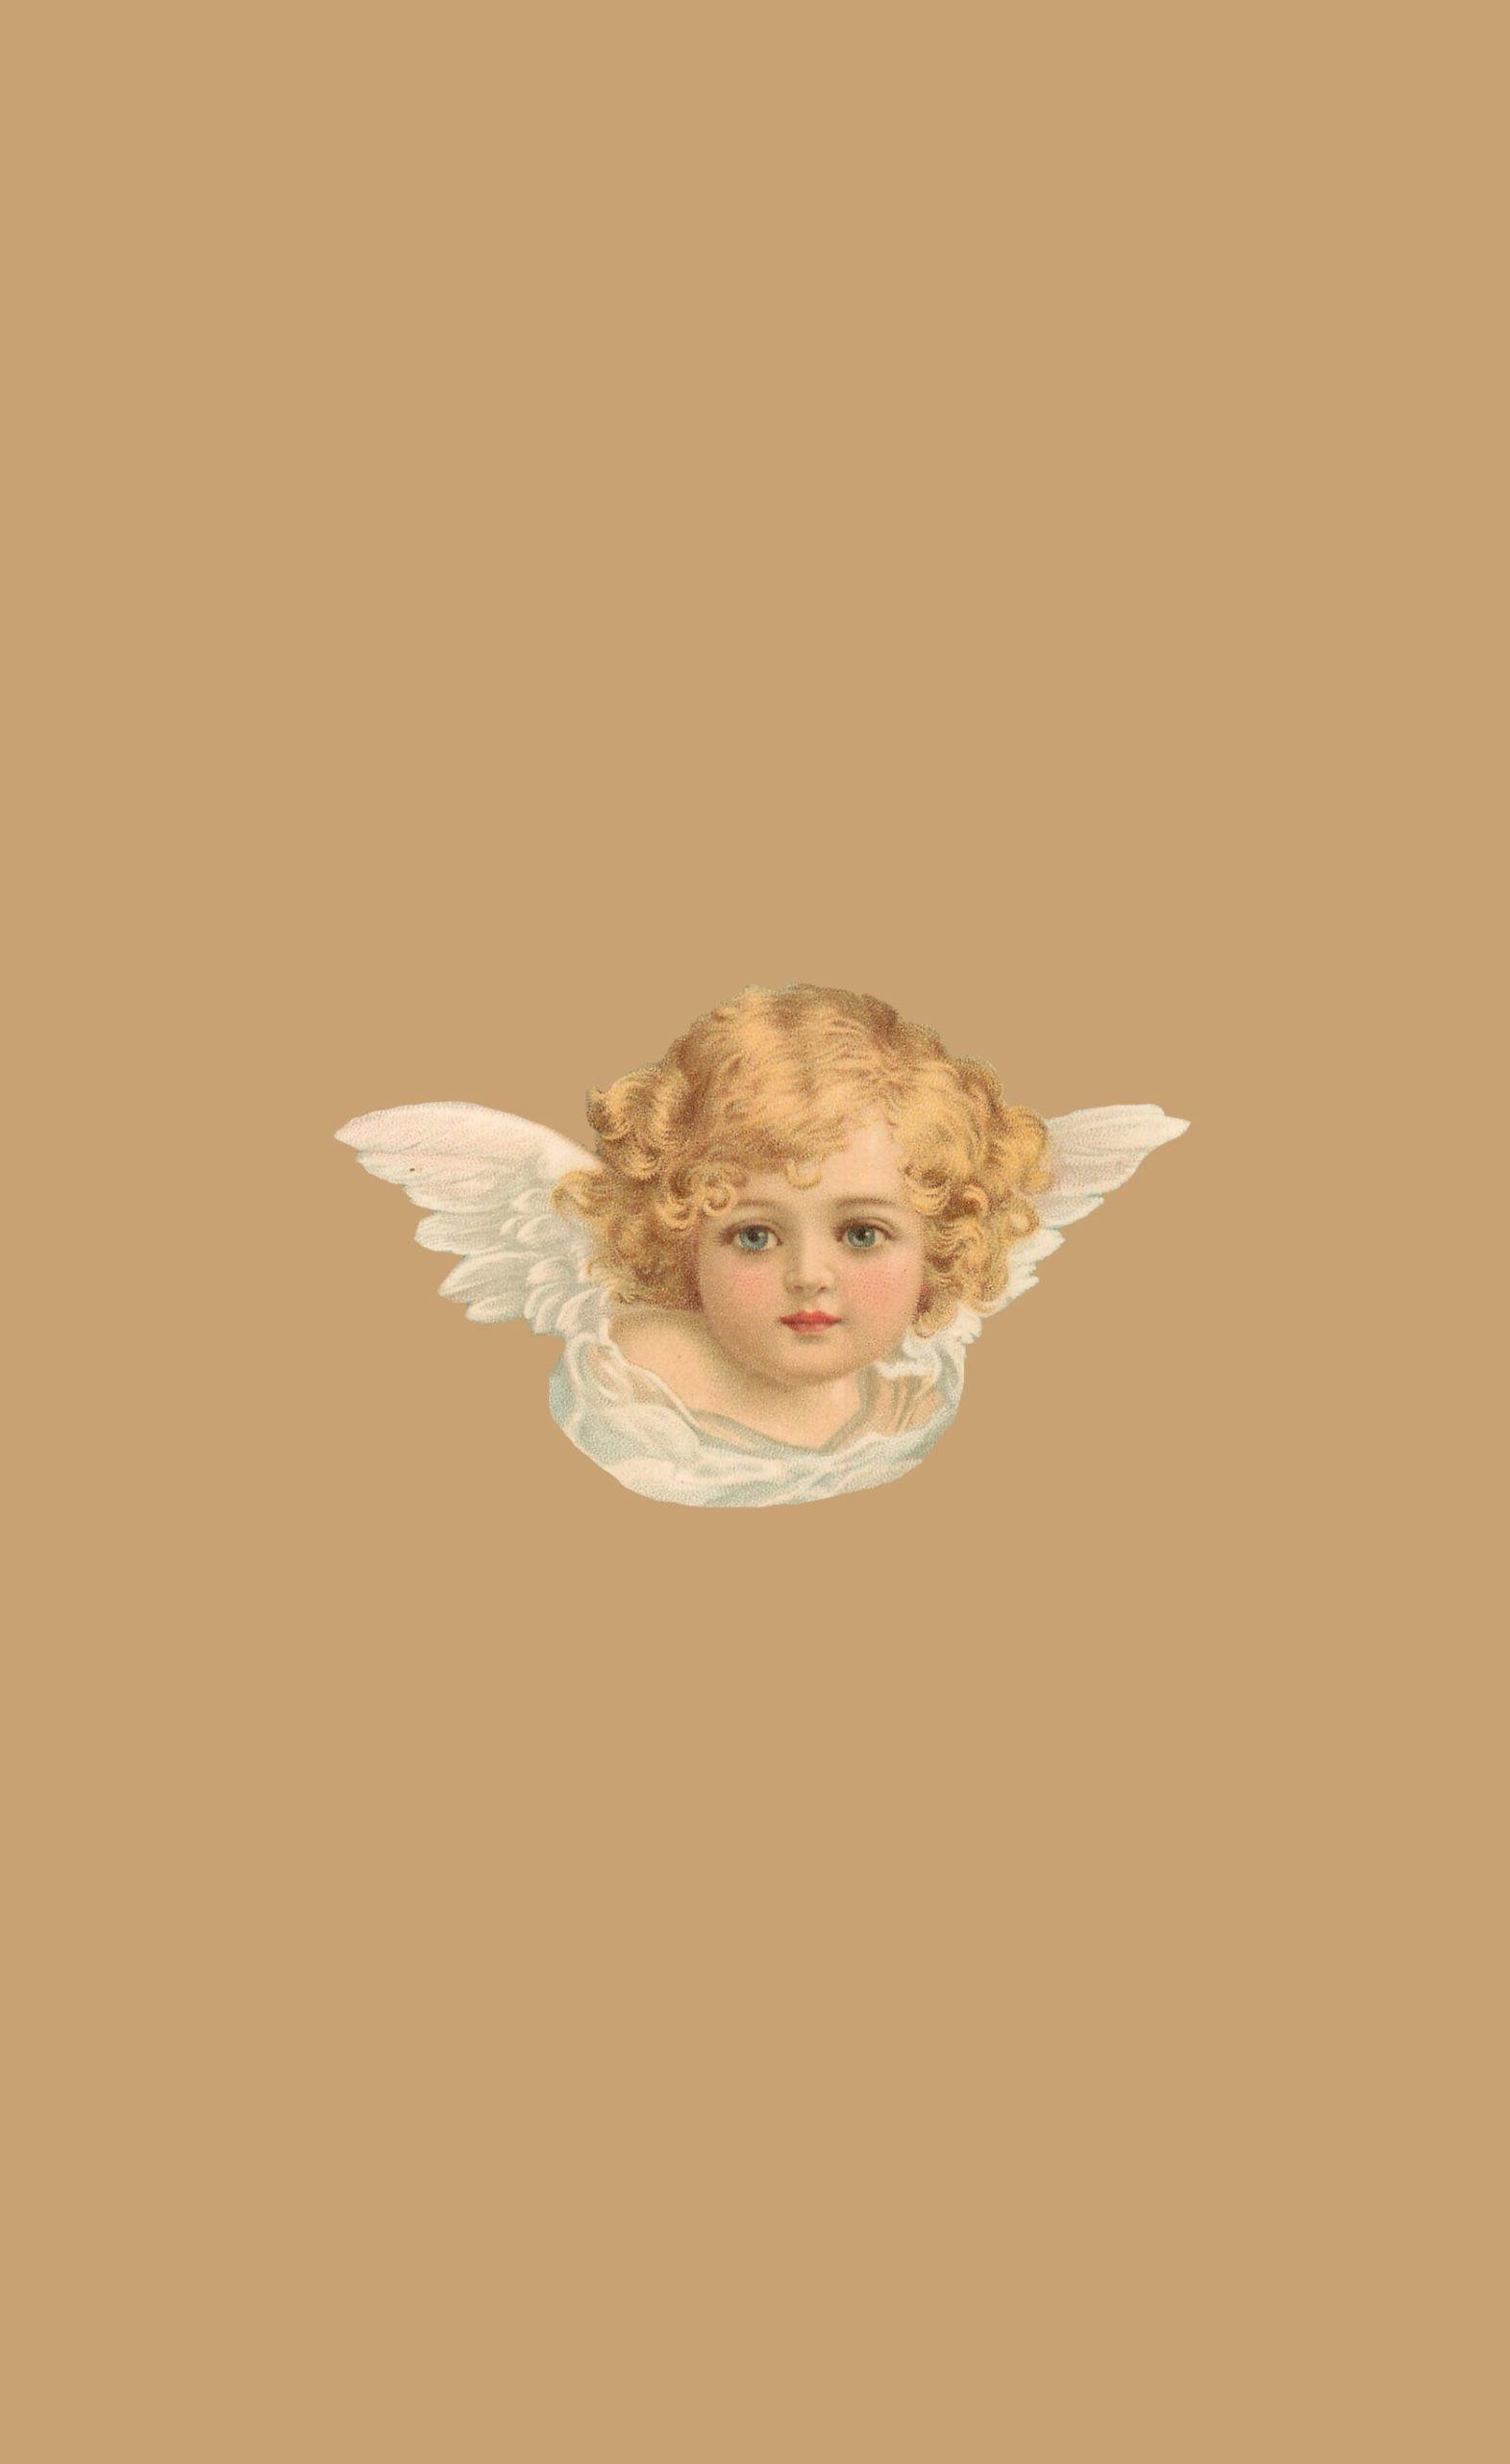 1571x2563 Tumblr Aesthetic Vintage Angel